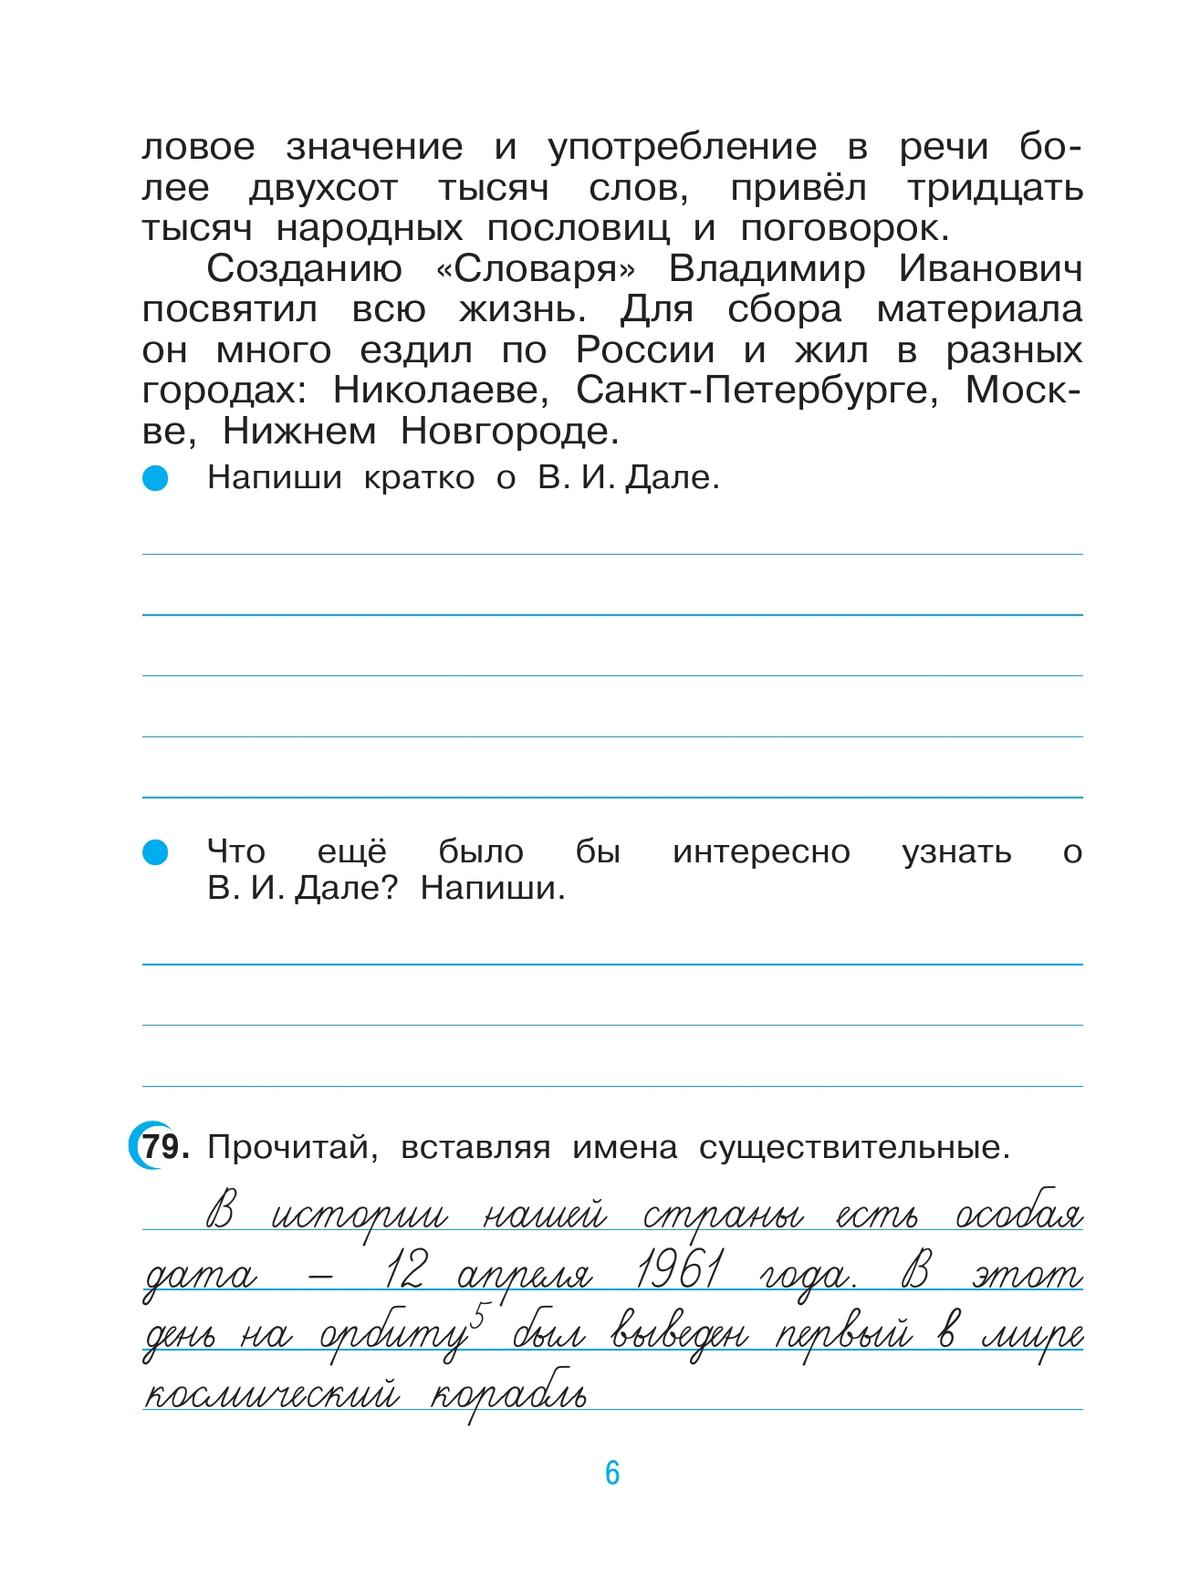 Русский язык. 3 класс. Рабочая тетрадь. В 2 ч. Часть 2 3